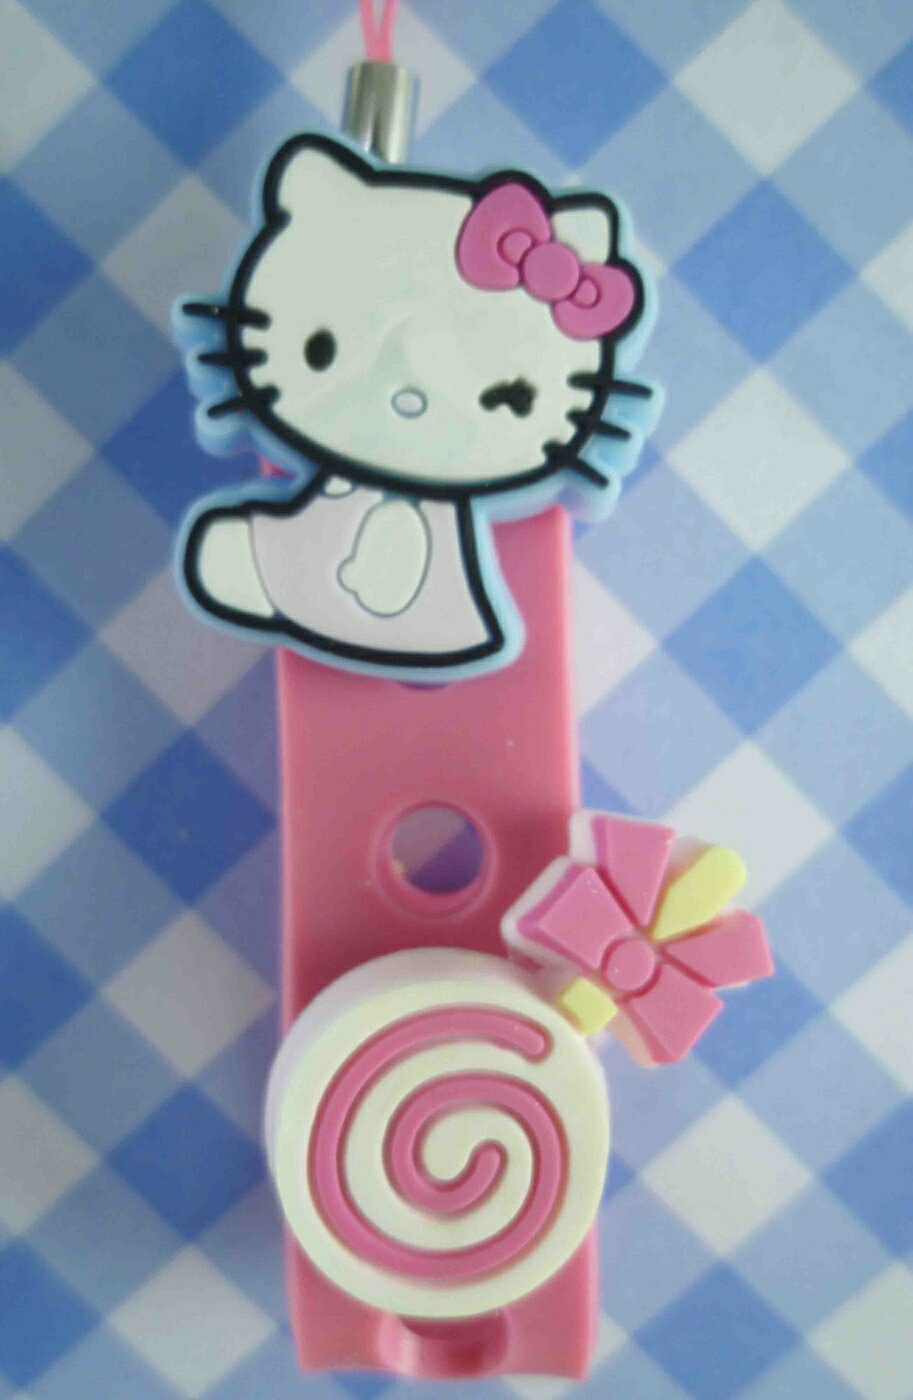 【震撼精品百貨】Hello Kitty 凱蒂貓 限定版手機吊飾-棒棒糖(粉) 震撼日式精品百貨